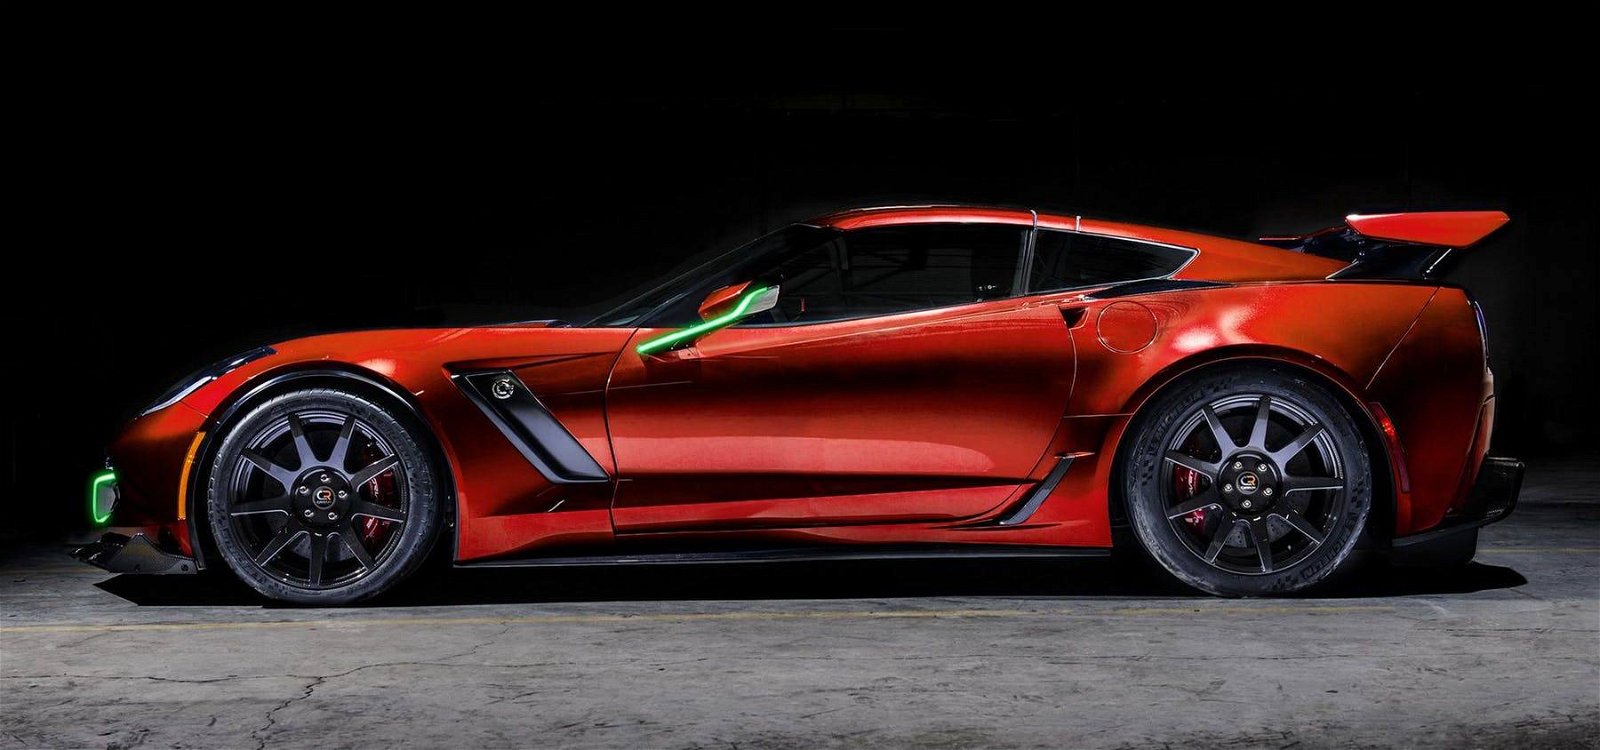 Immagine di Corvette elettrica: cambio manuale e 800CV bastano?